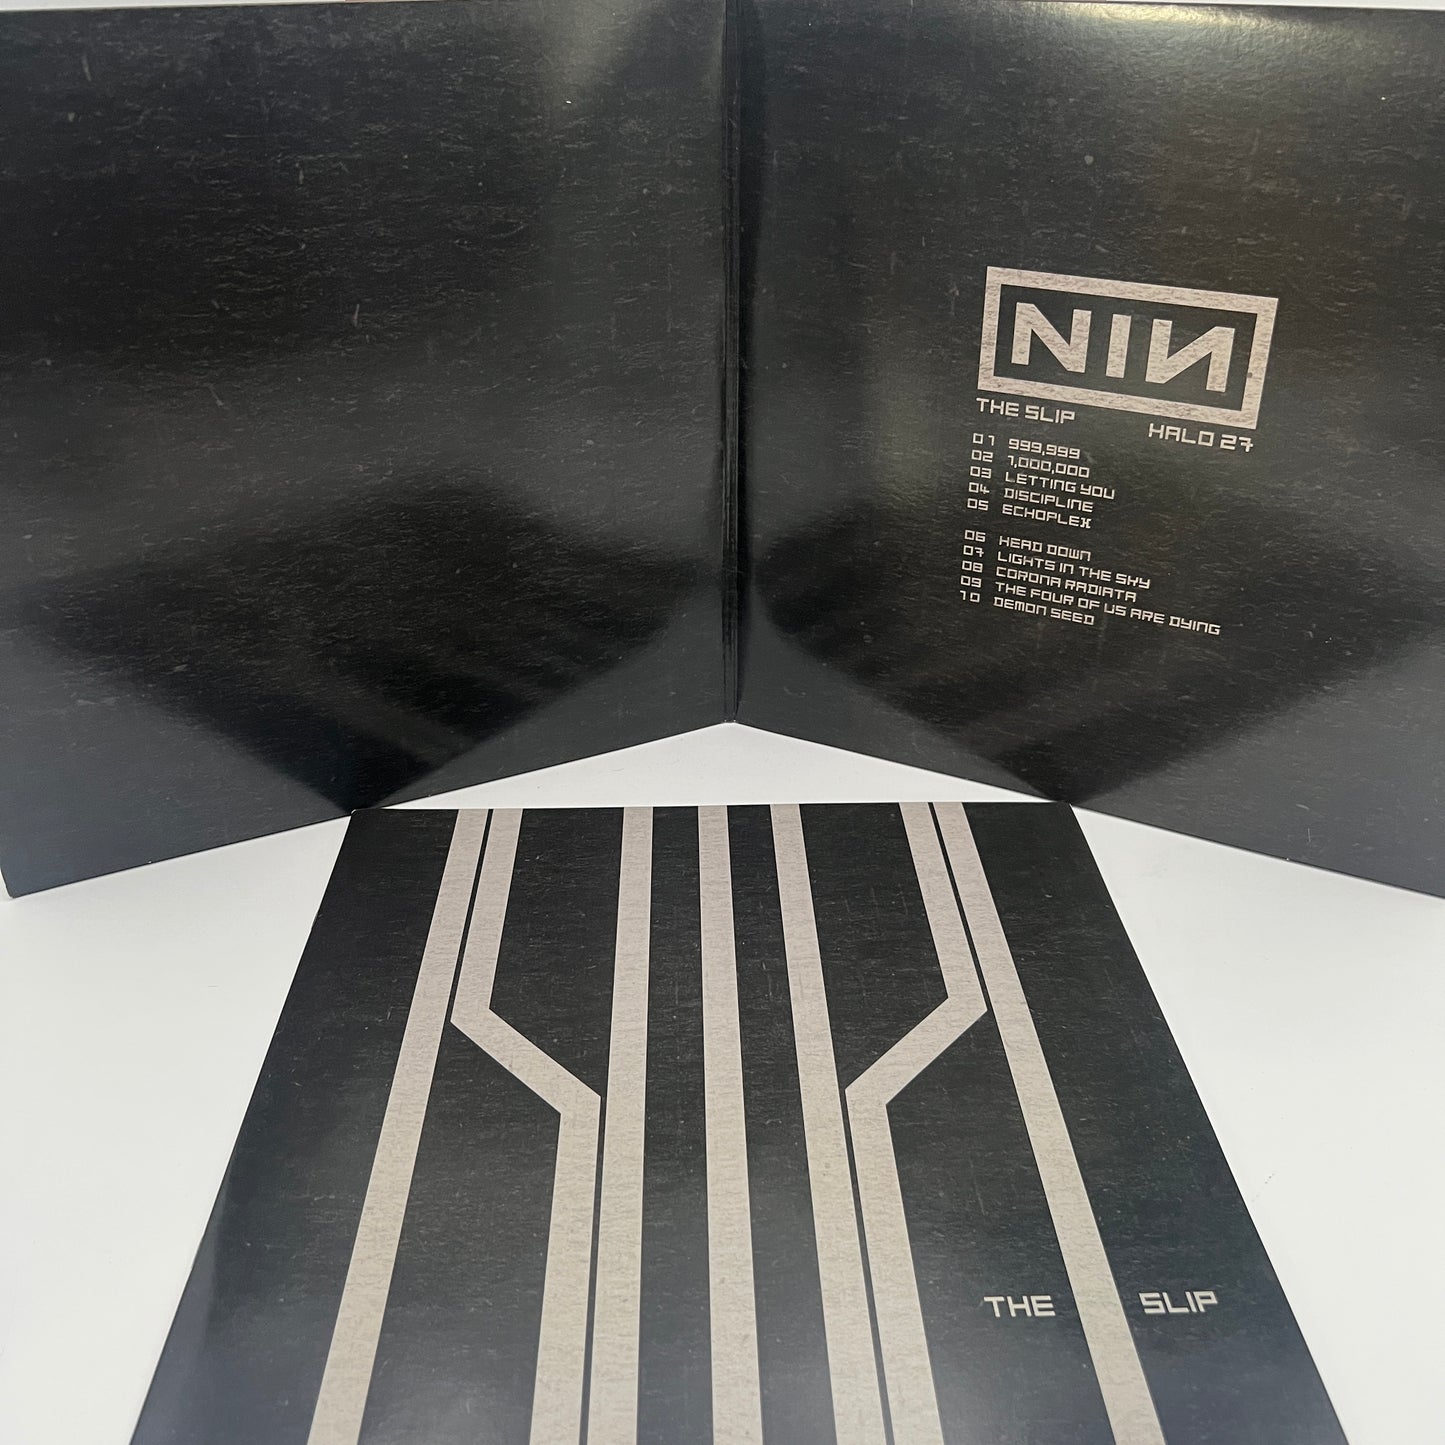 Nine Inch Nails ‎- The Slip Vinyl LP 180gram